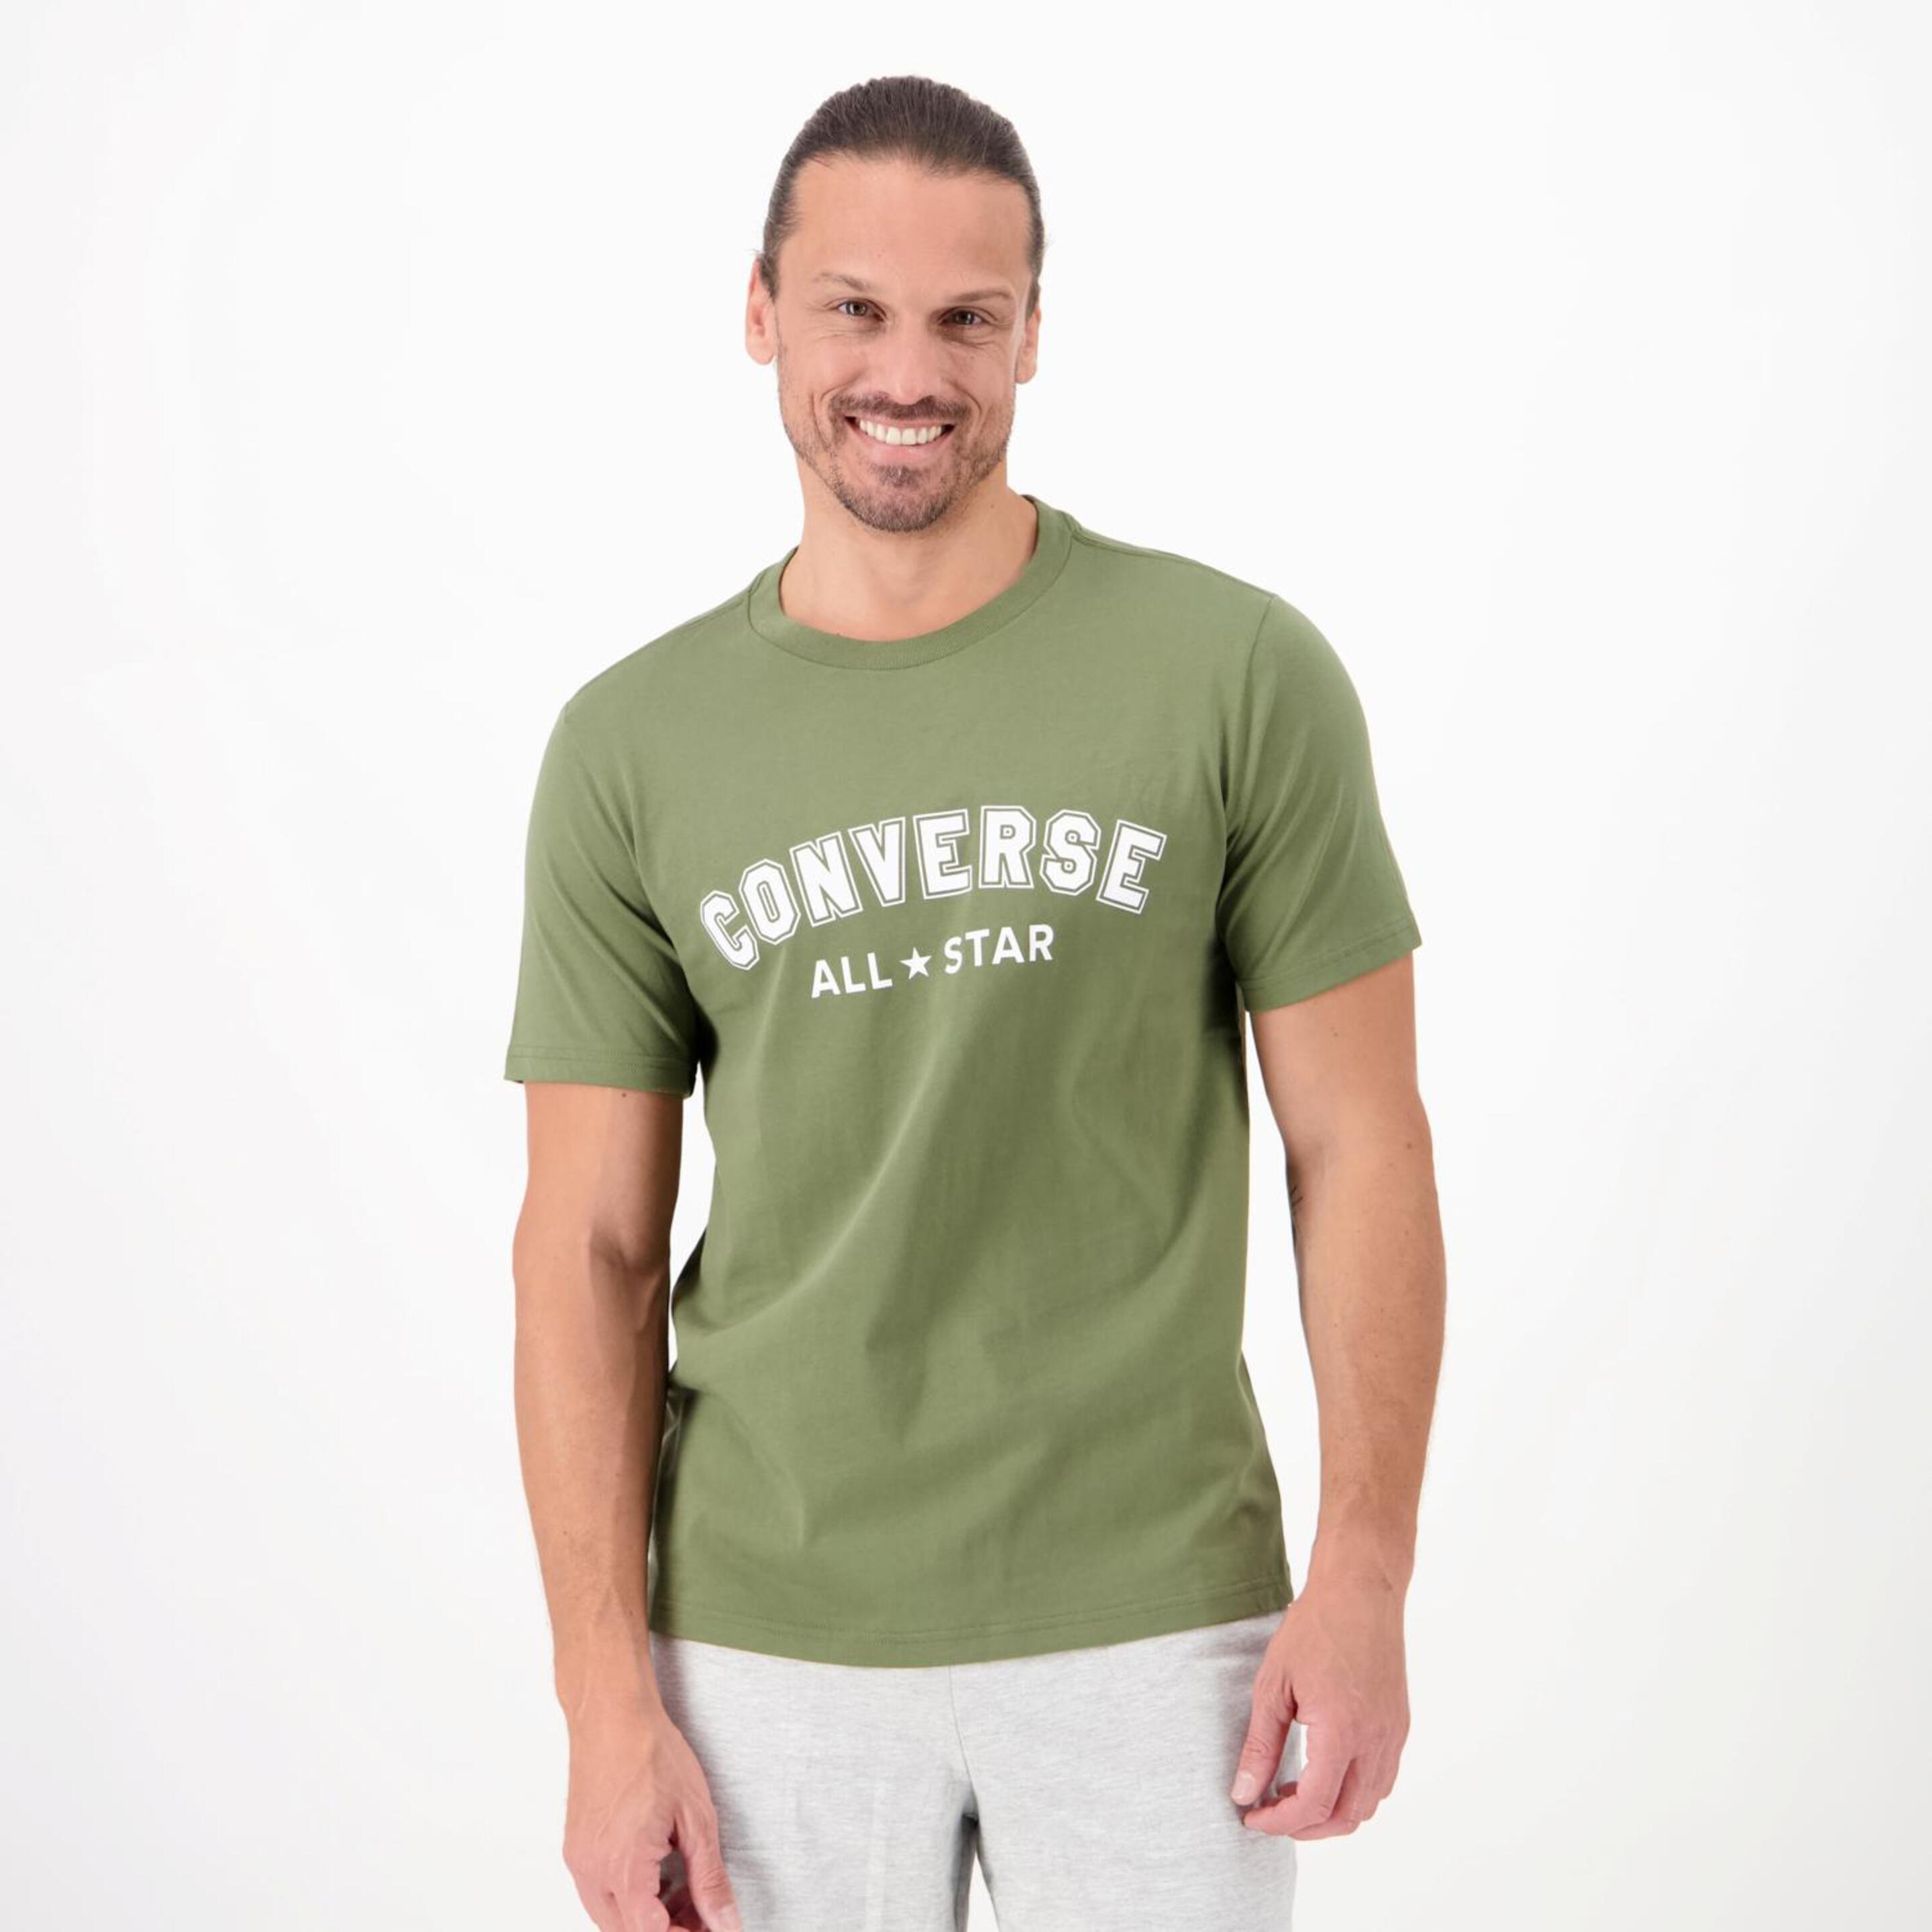 Converse All Star - verde - T-shirt Homem